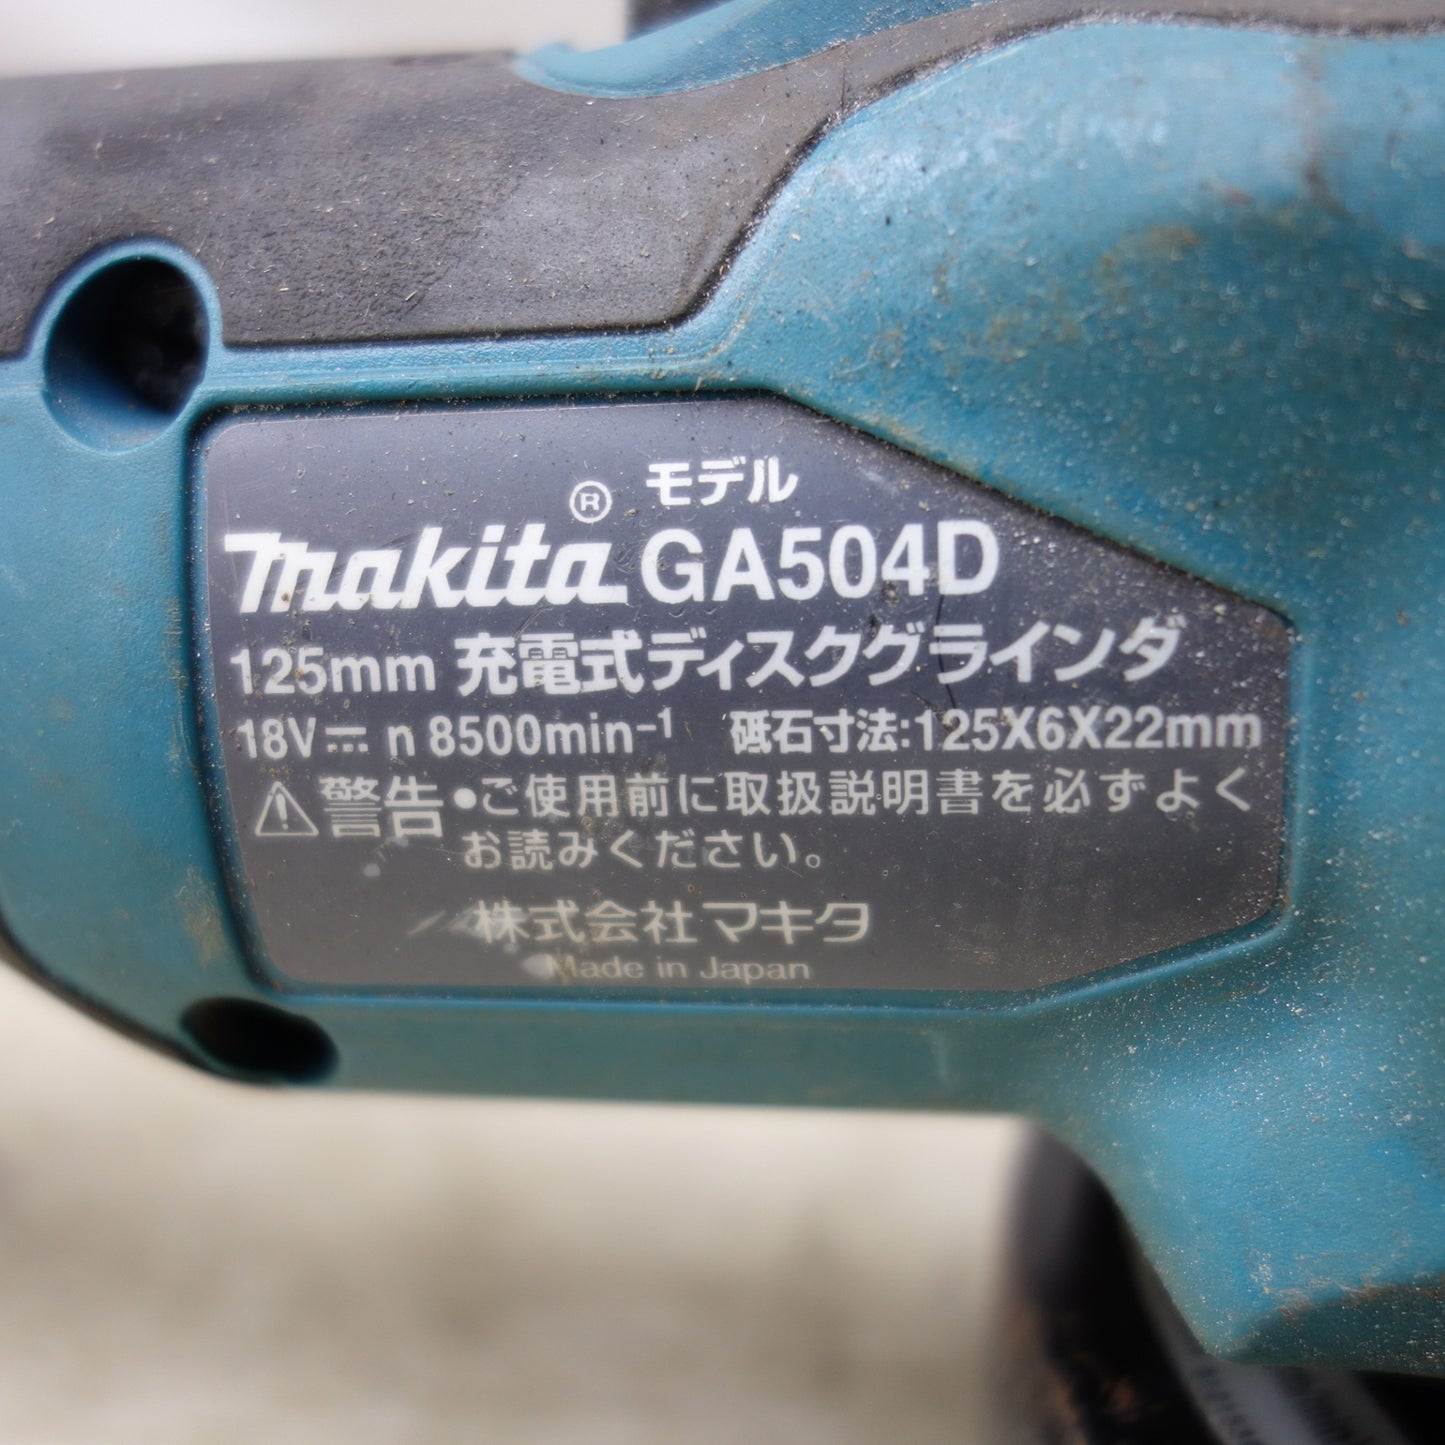 [送料無料] ◆makita マキタ 125mm 充電式ディスクグラインダ GA504D 18V 研磨機 電動工具 本体のみ◆